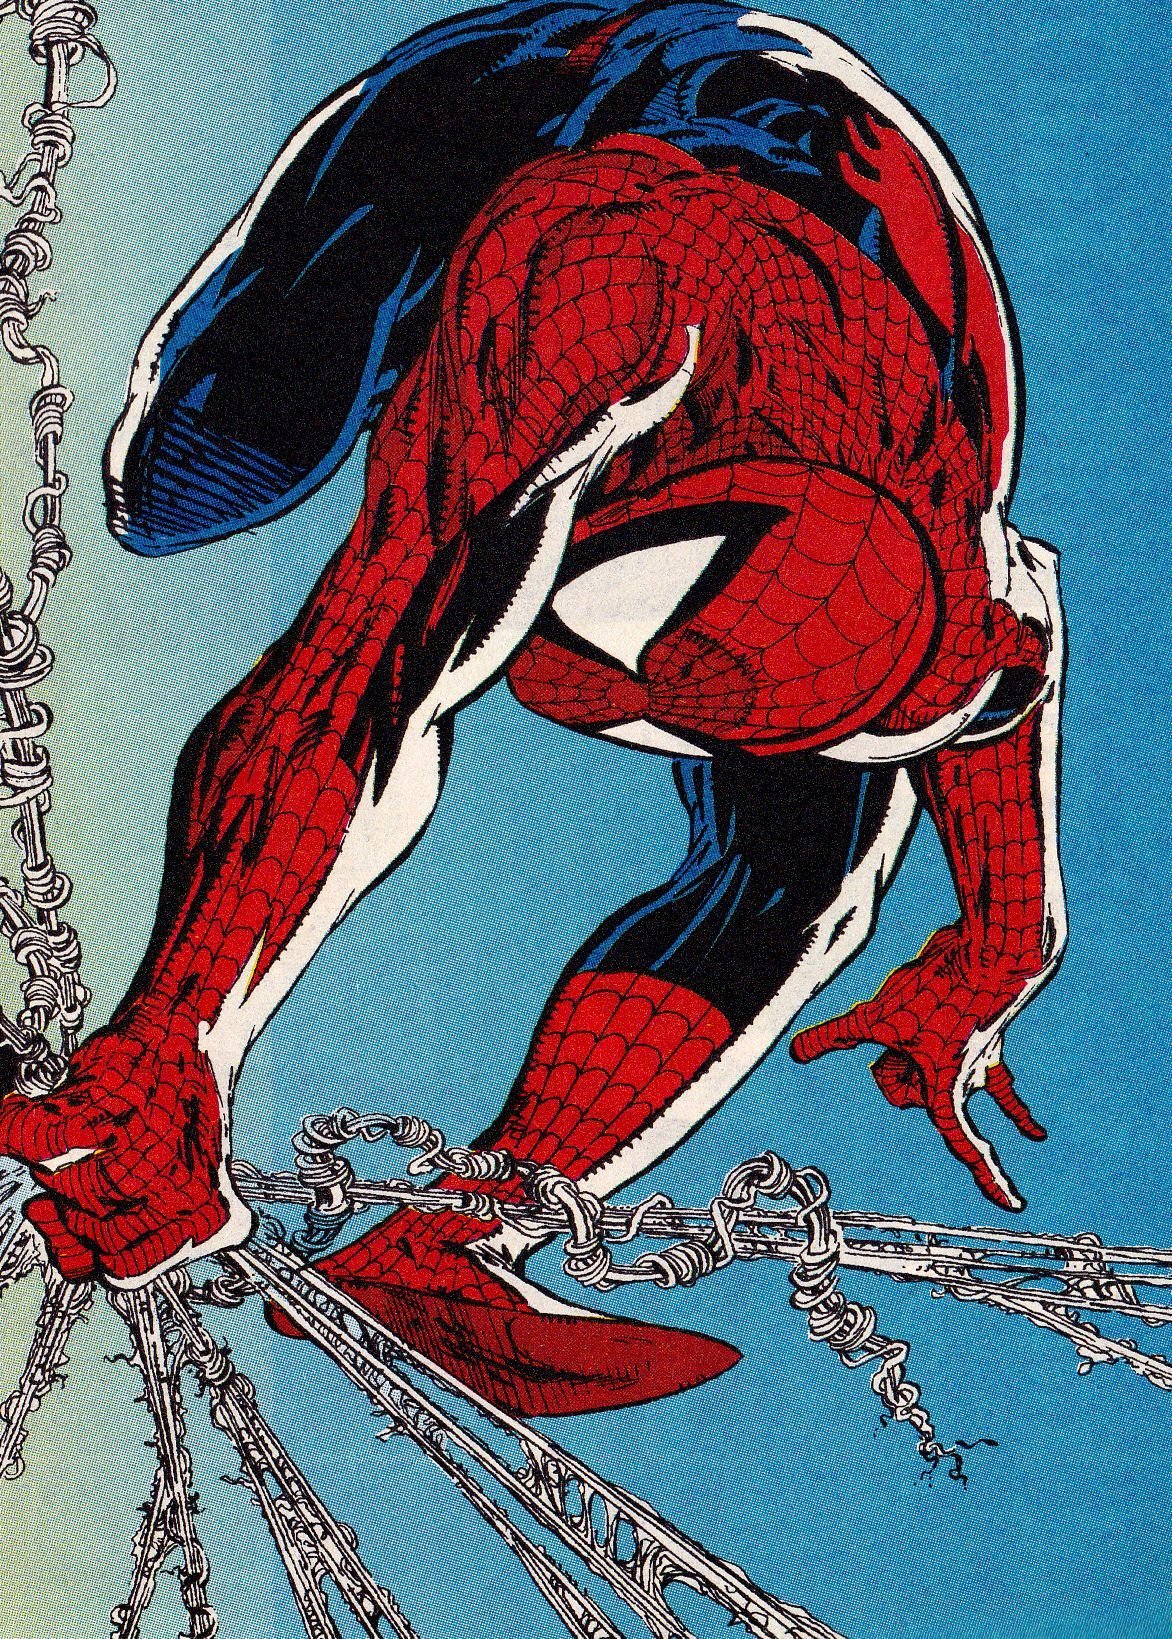 Spiderman Wallpaper For Google Chrome